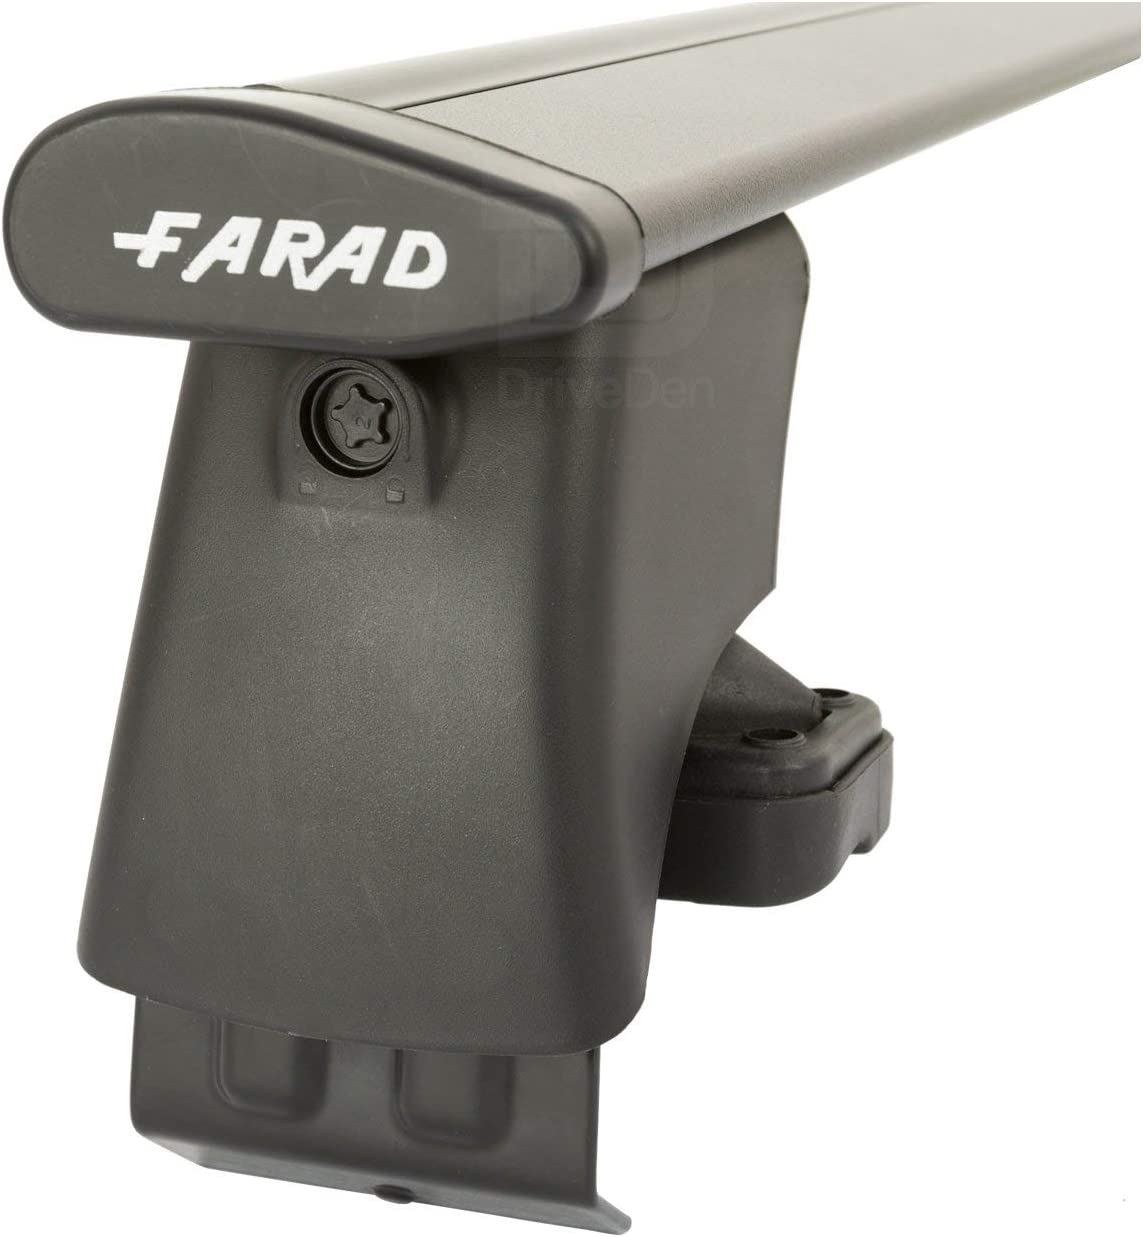 FARAD-Kit H2 per barre portatutto - Ford Mondeo S.W. 2007-2014 (senza corrimano)